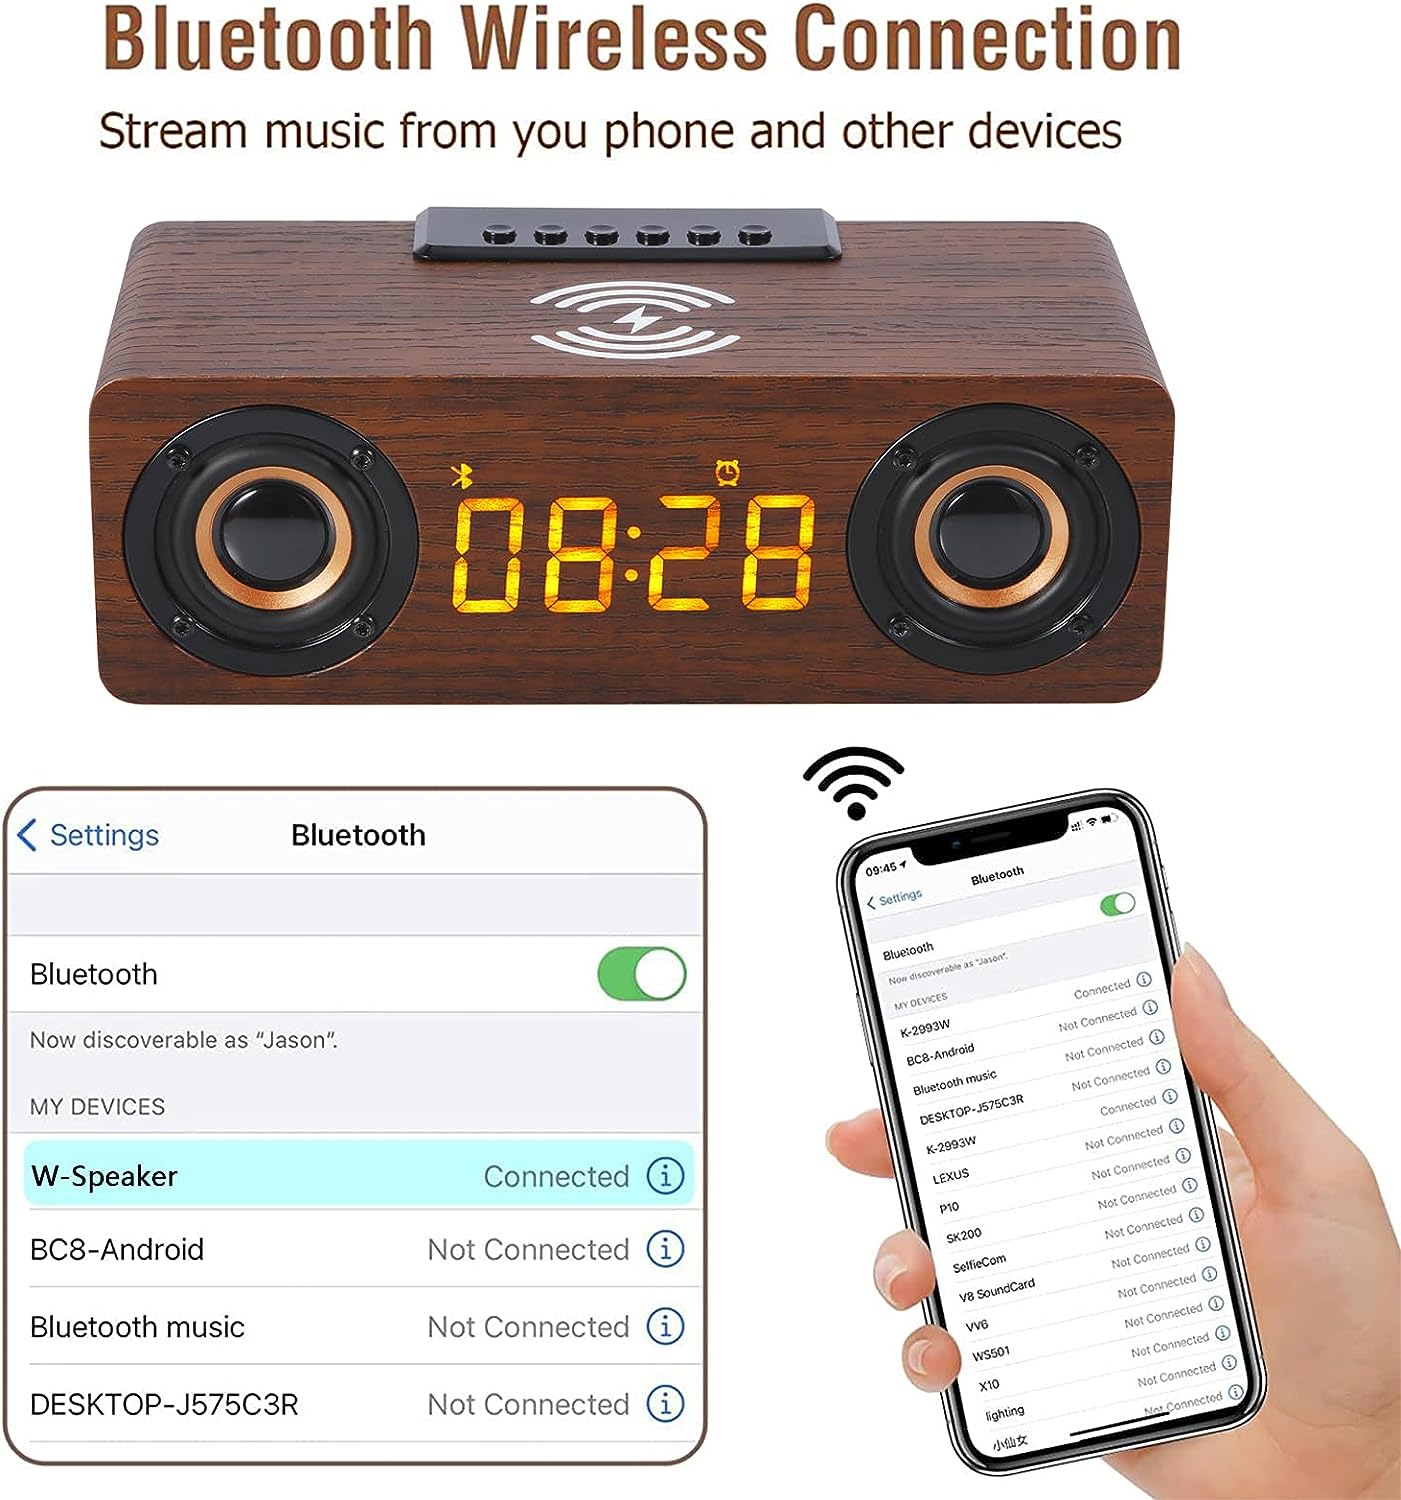 ساعت رومیزی دیجیتال مدل Wooden Digital Alarm - ارسال 10 الی 15 روز کاری